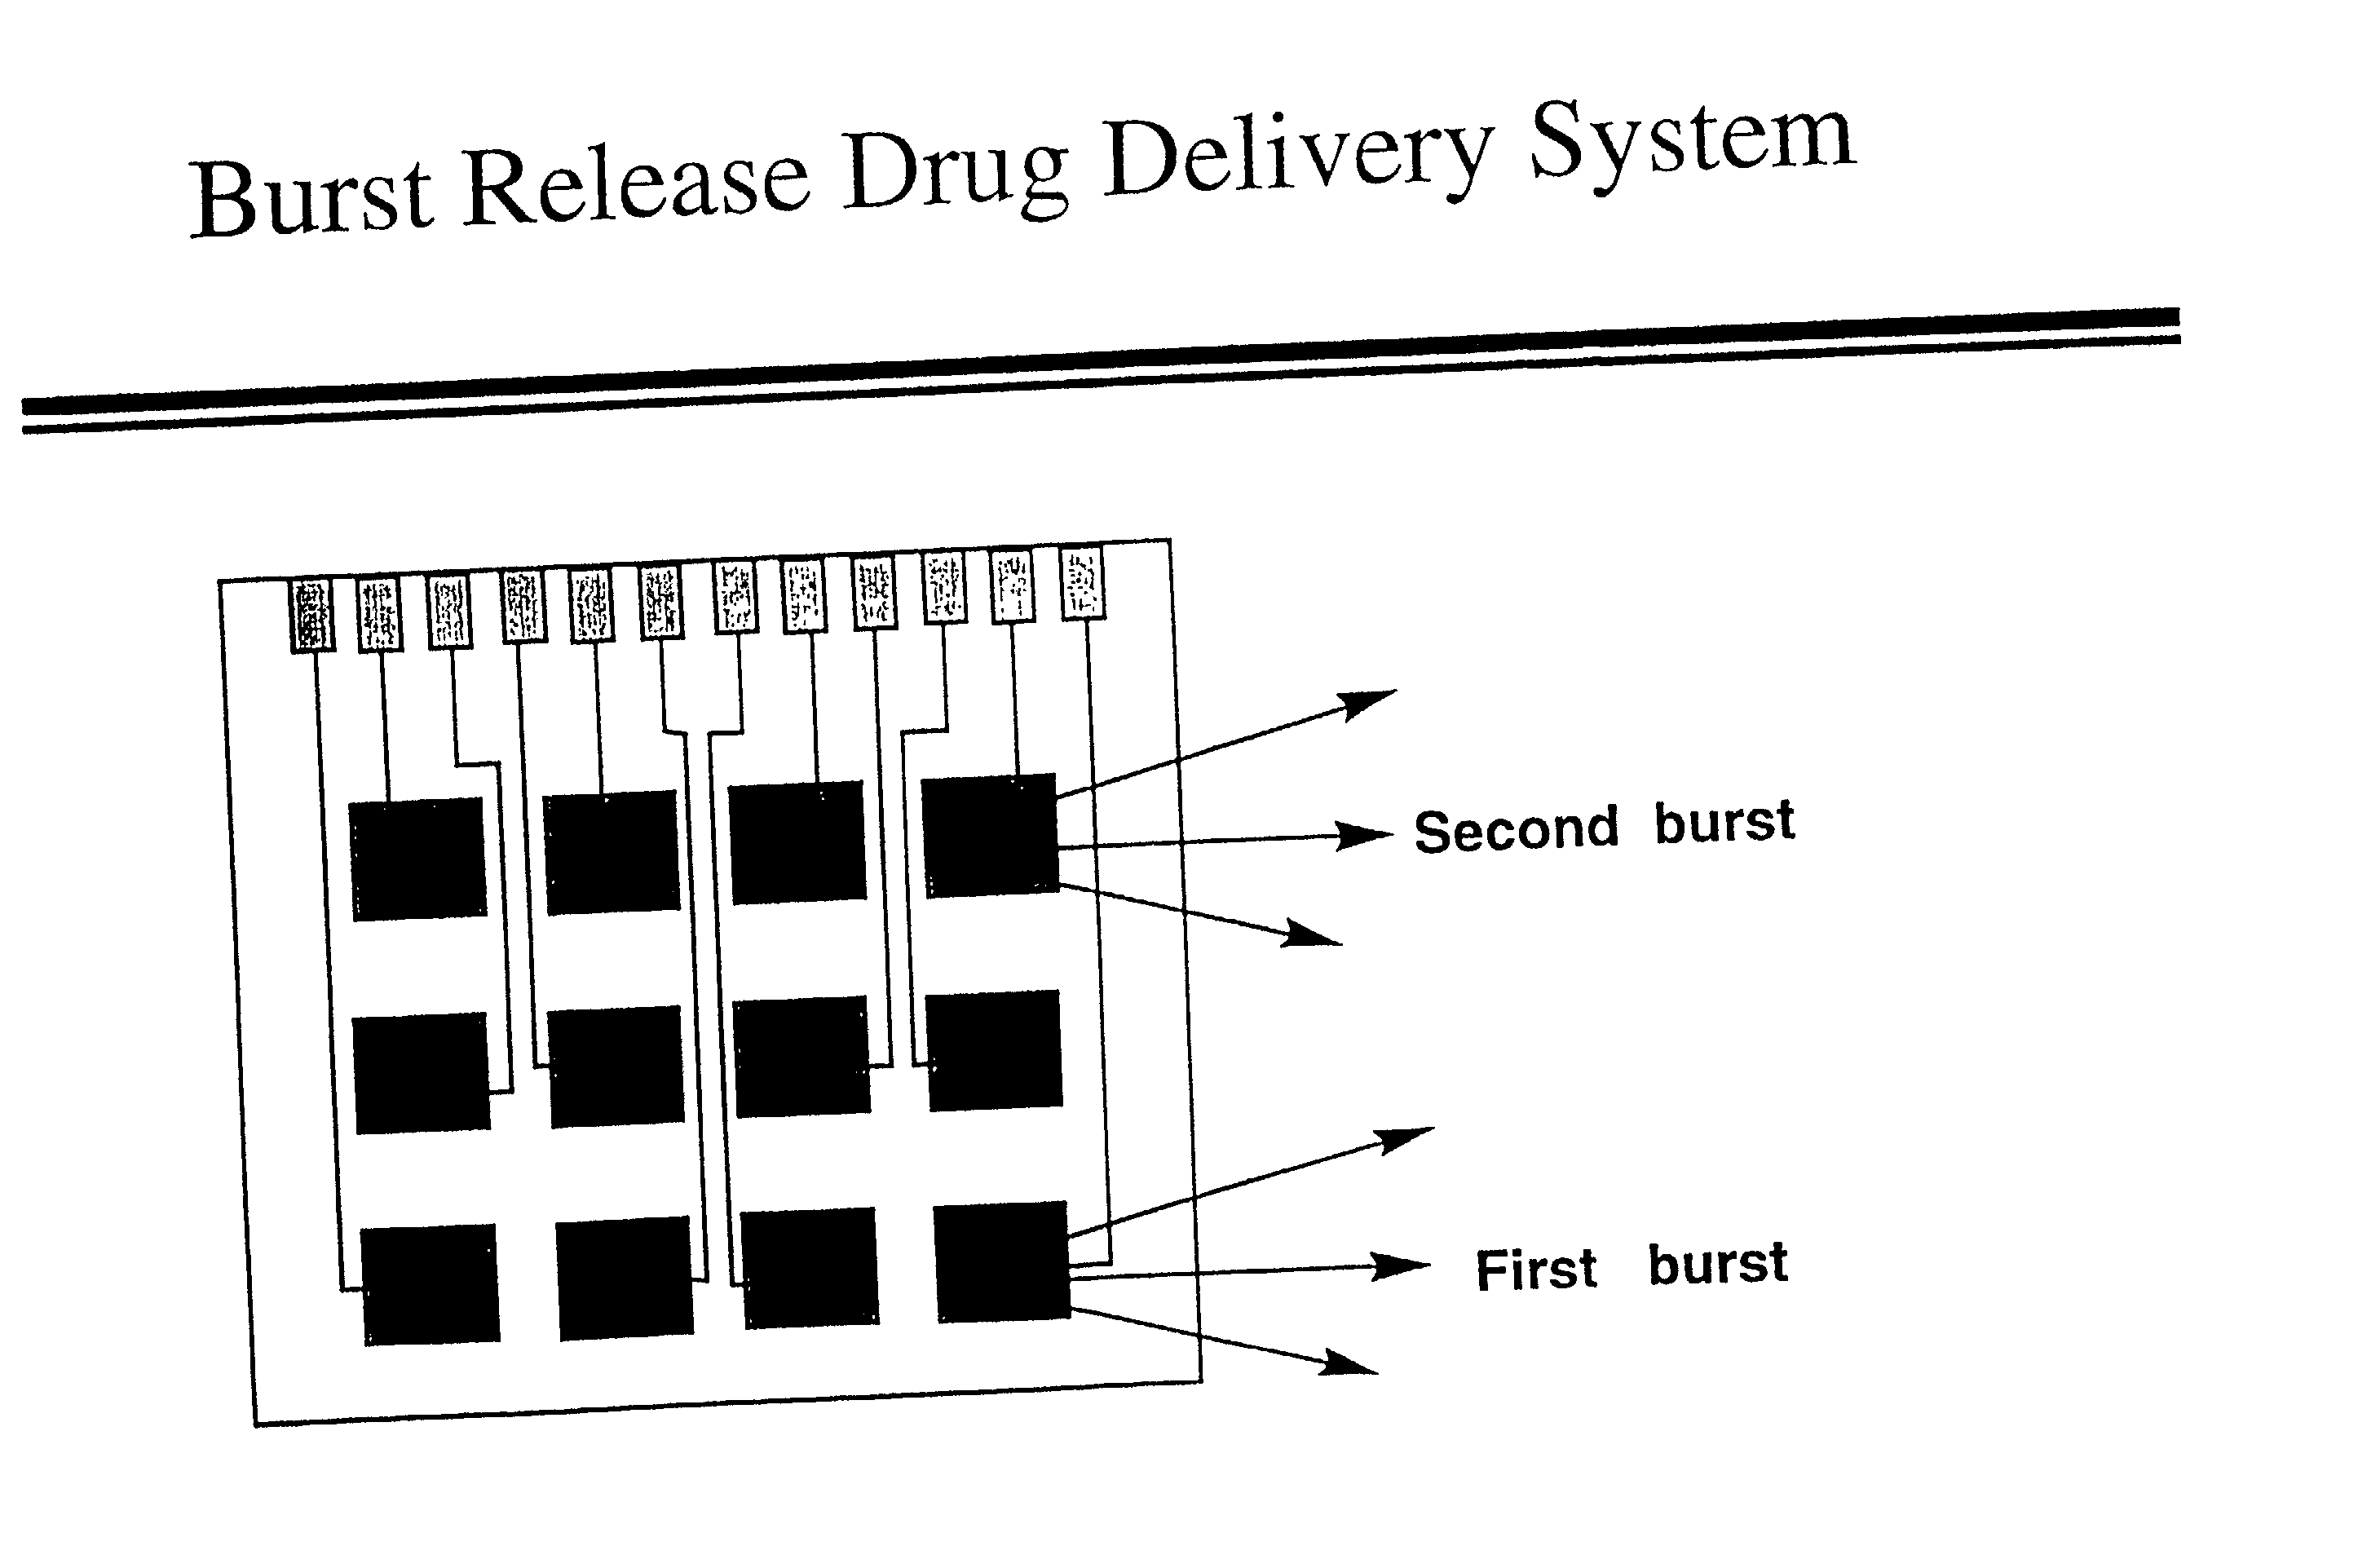 Drug release (delivery system)